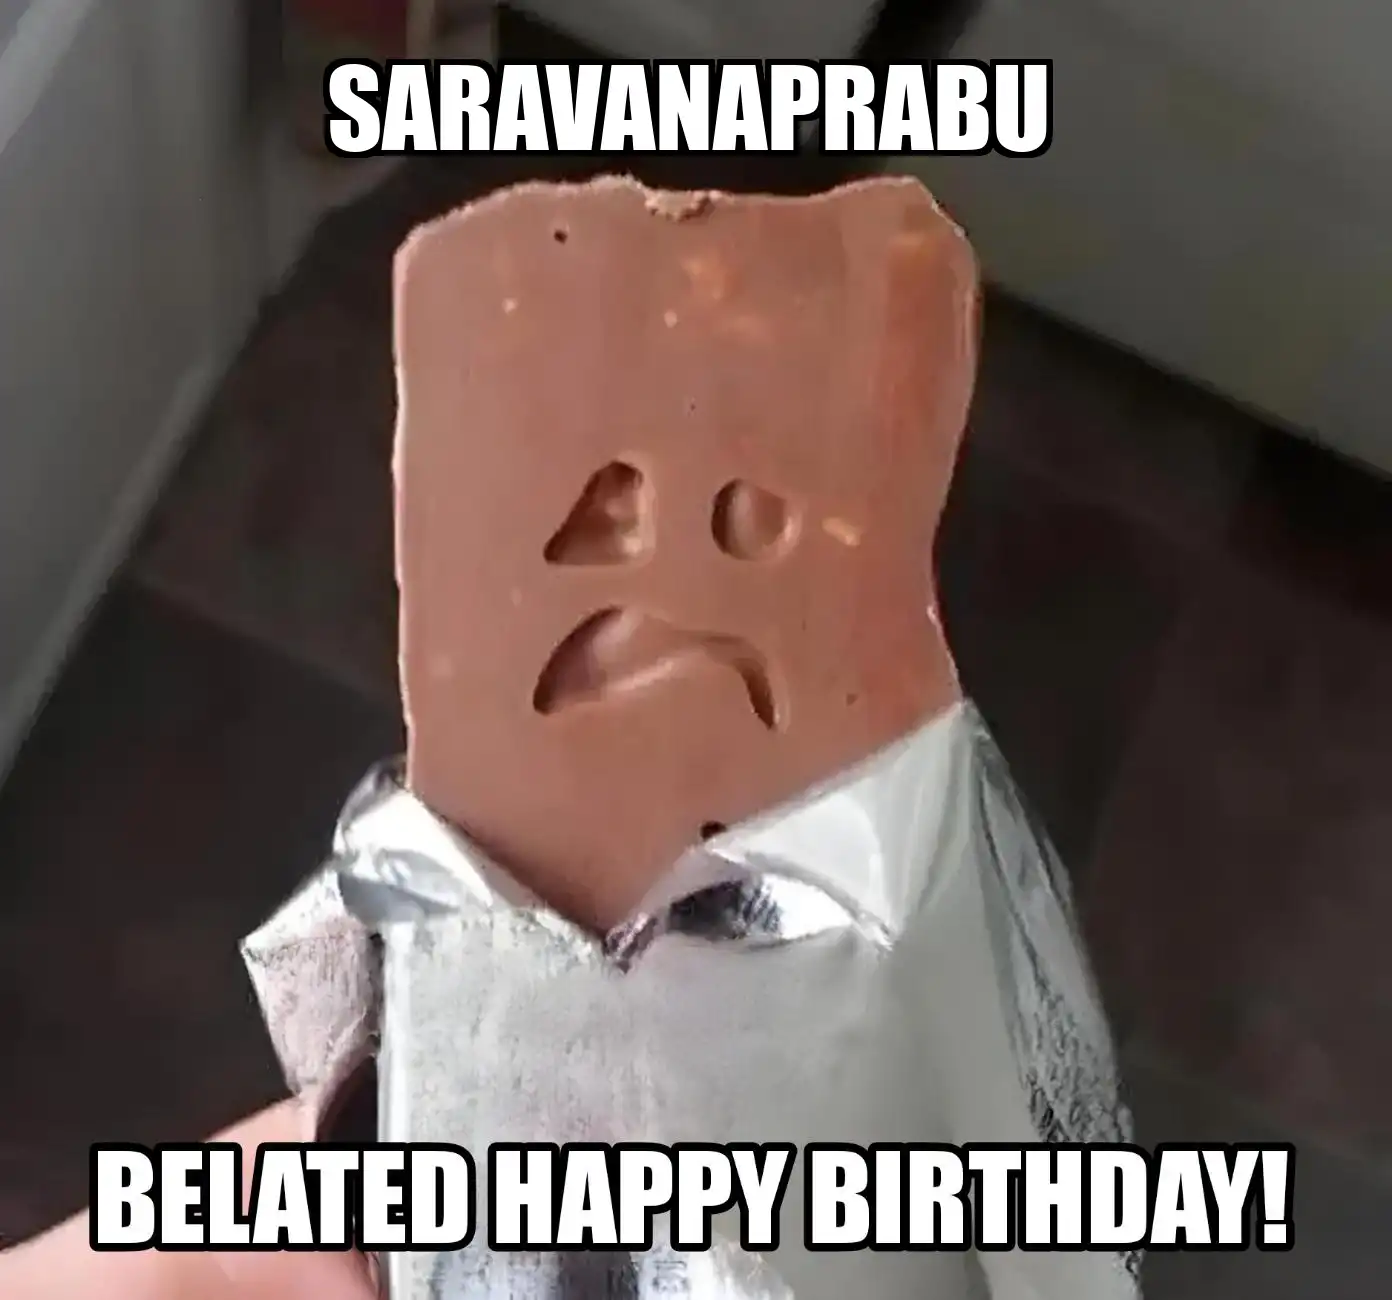 Happy Birthday Saravanaprabu Belated Happy Birthday Meme